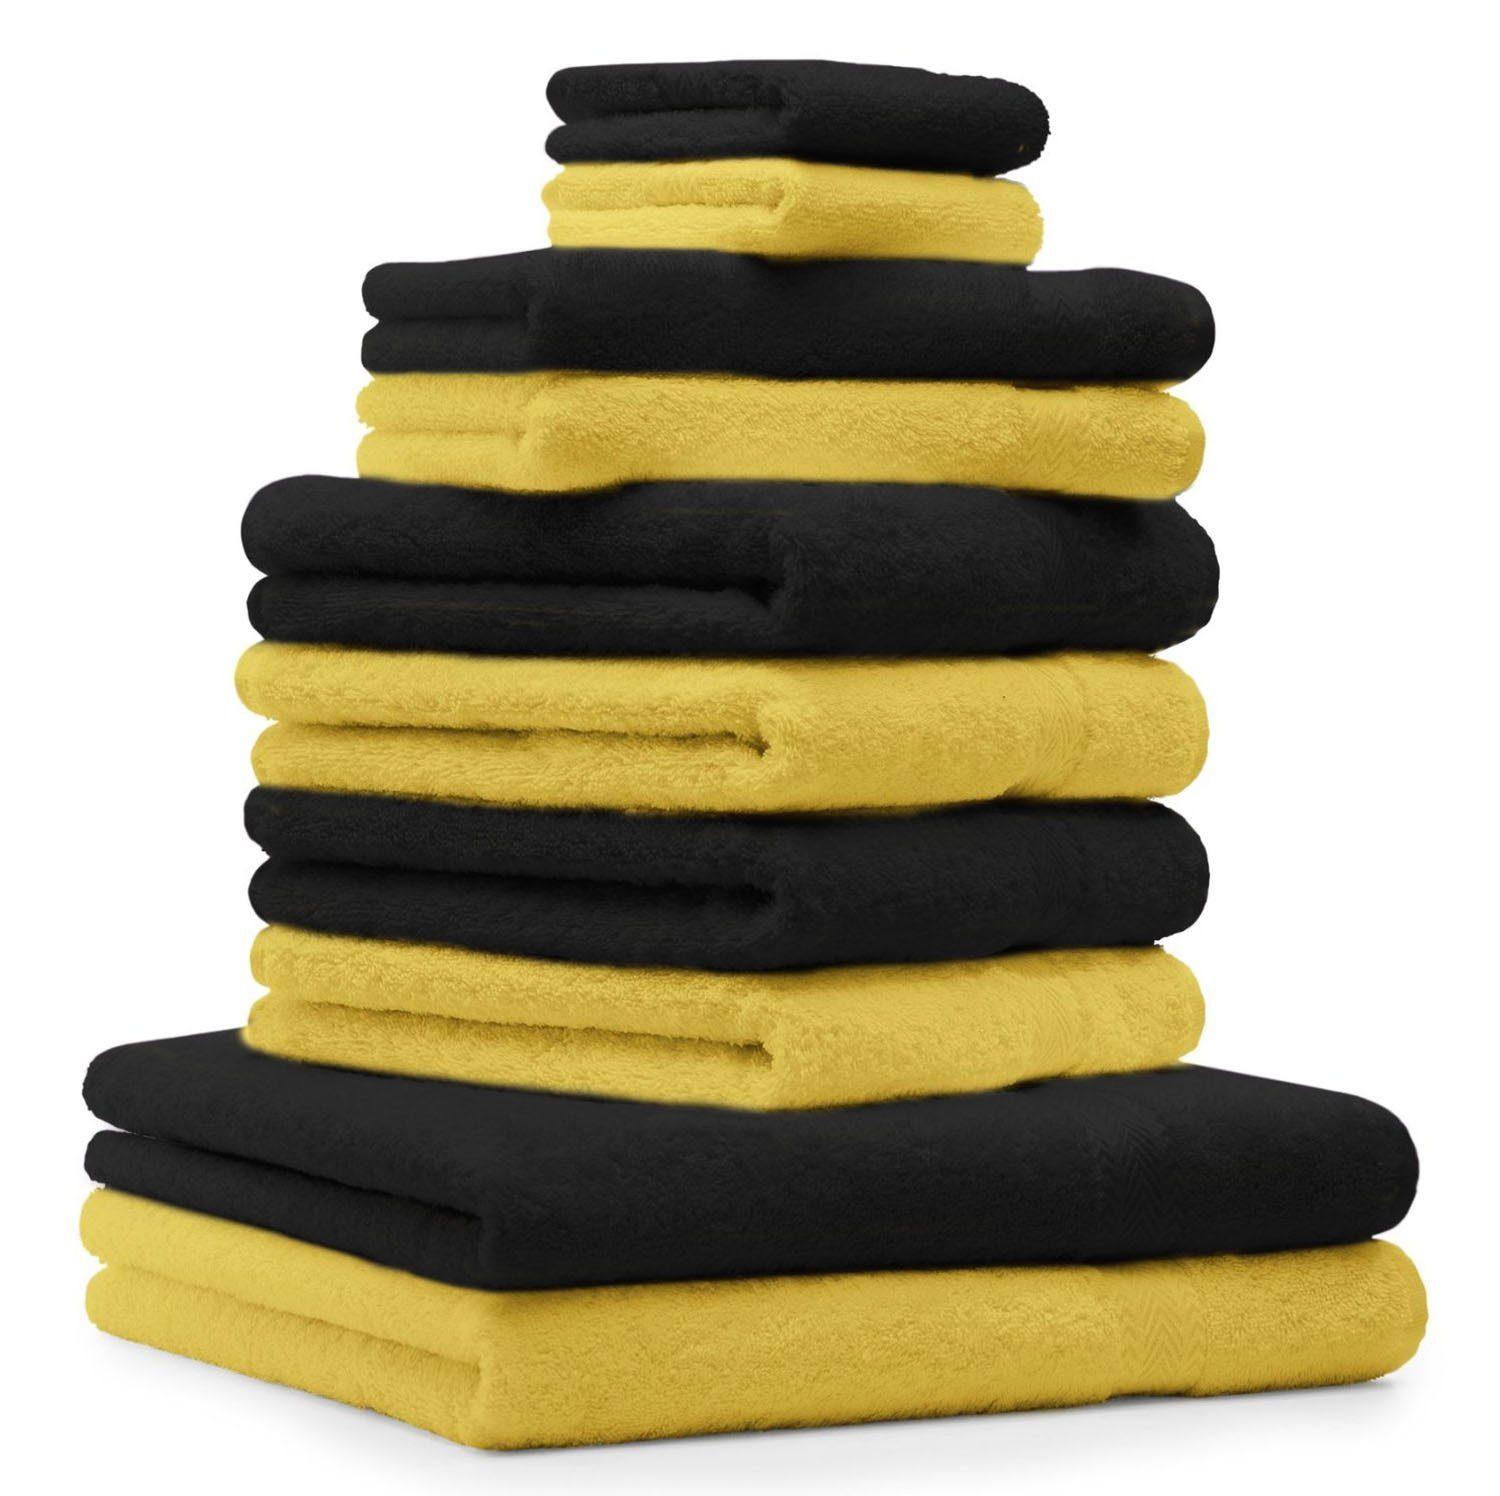 Betz Handtuch Set 10-TLG. Handtuch-Set Classic Farbe gelb und schwarz, 100% Baumwolle